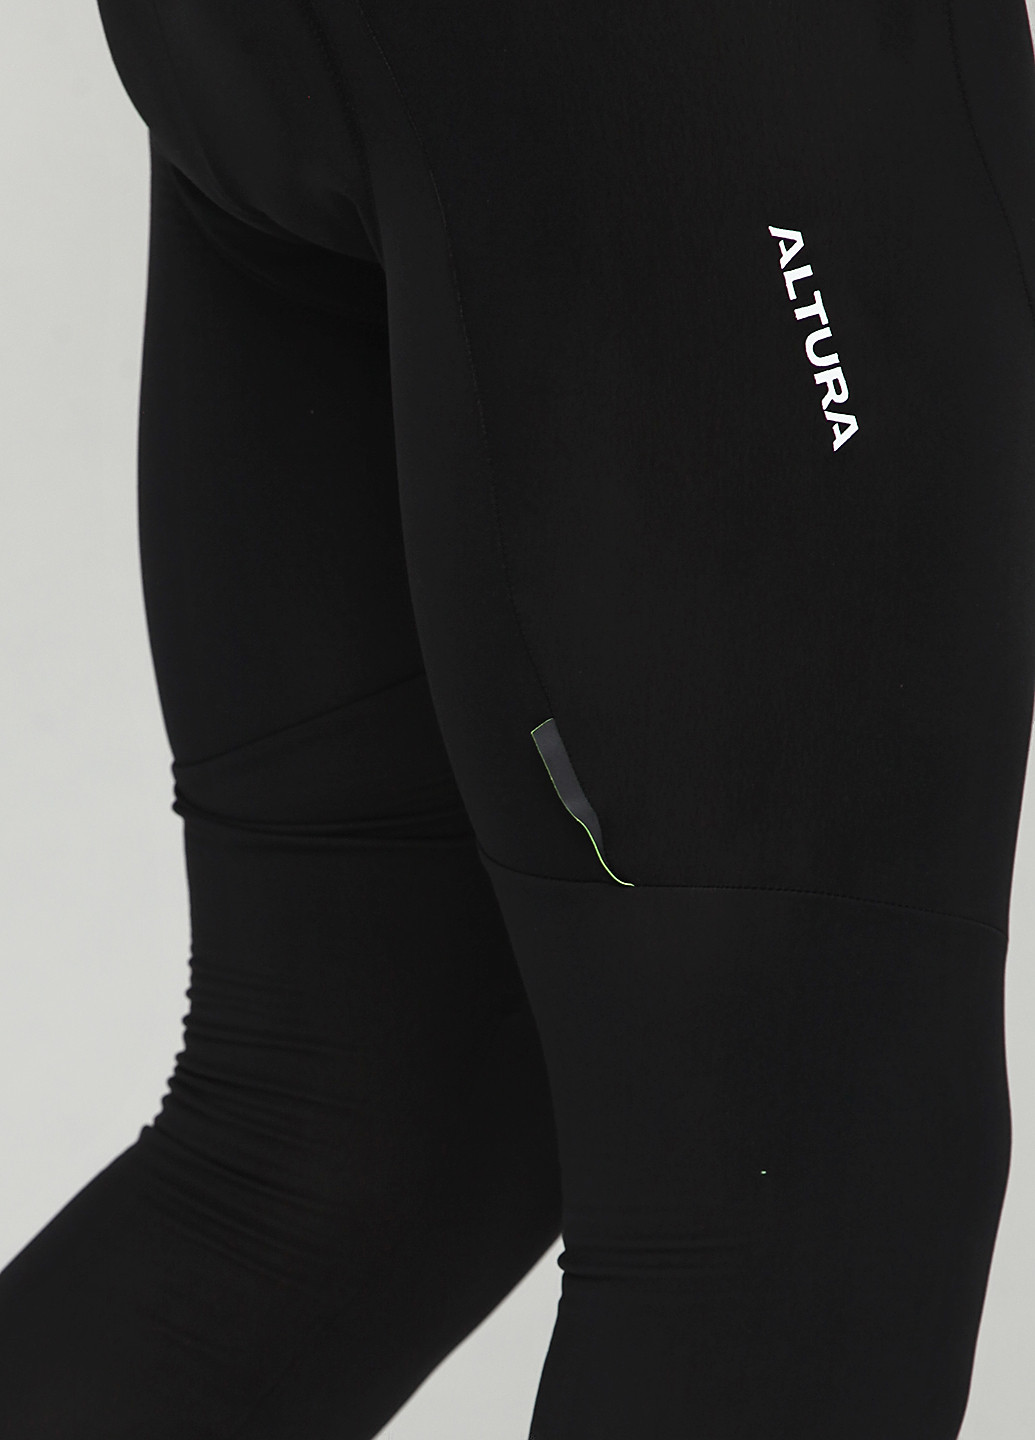 Комбинезон ALTURA комбинезон-брюки однотонный чёрный спортивный